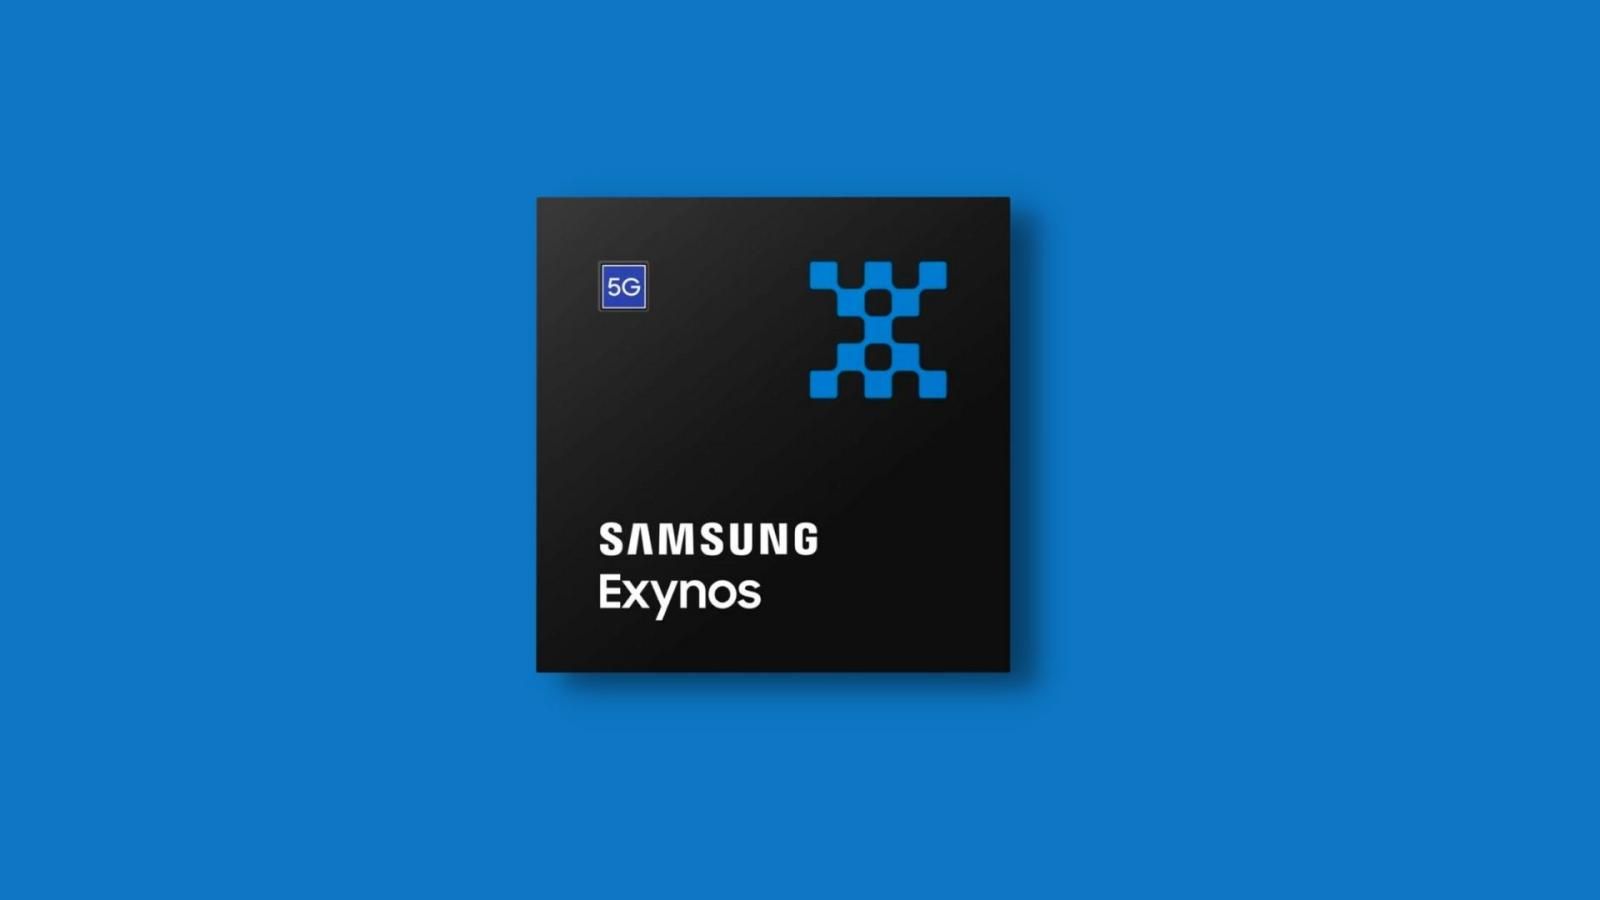 Samsung Exynos chipset 2 featured